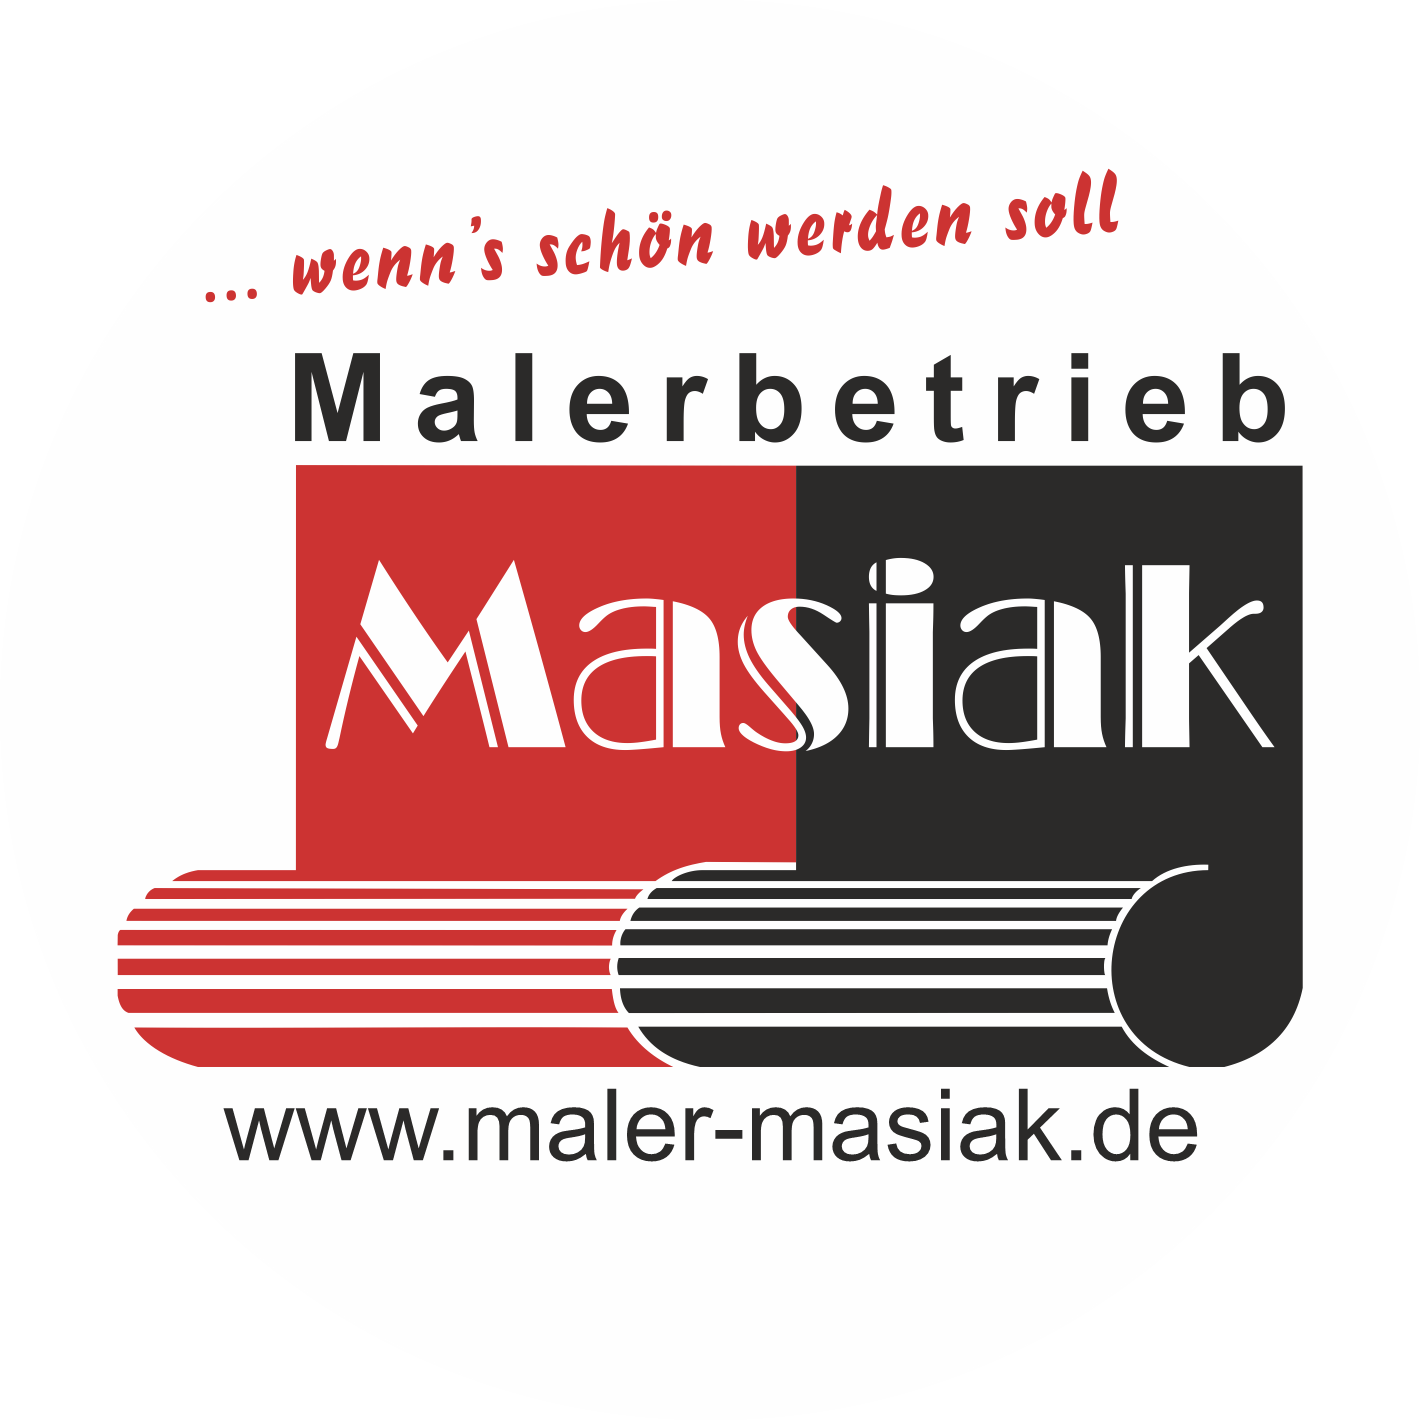 (c) Maler-masiak.de